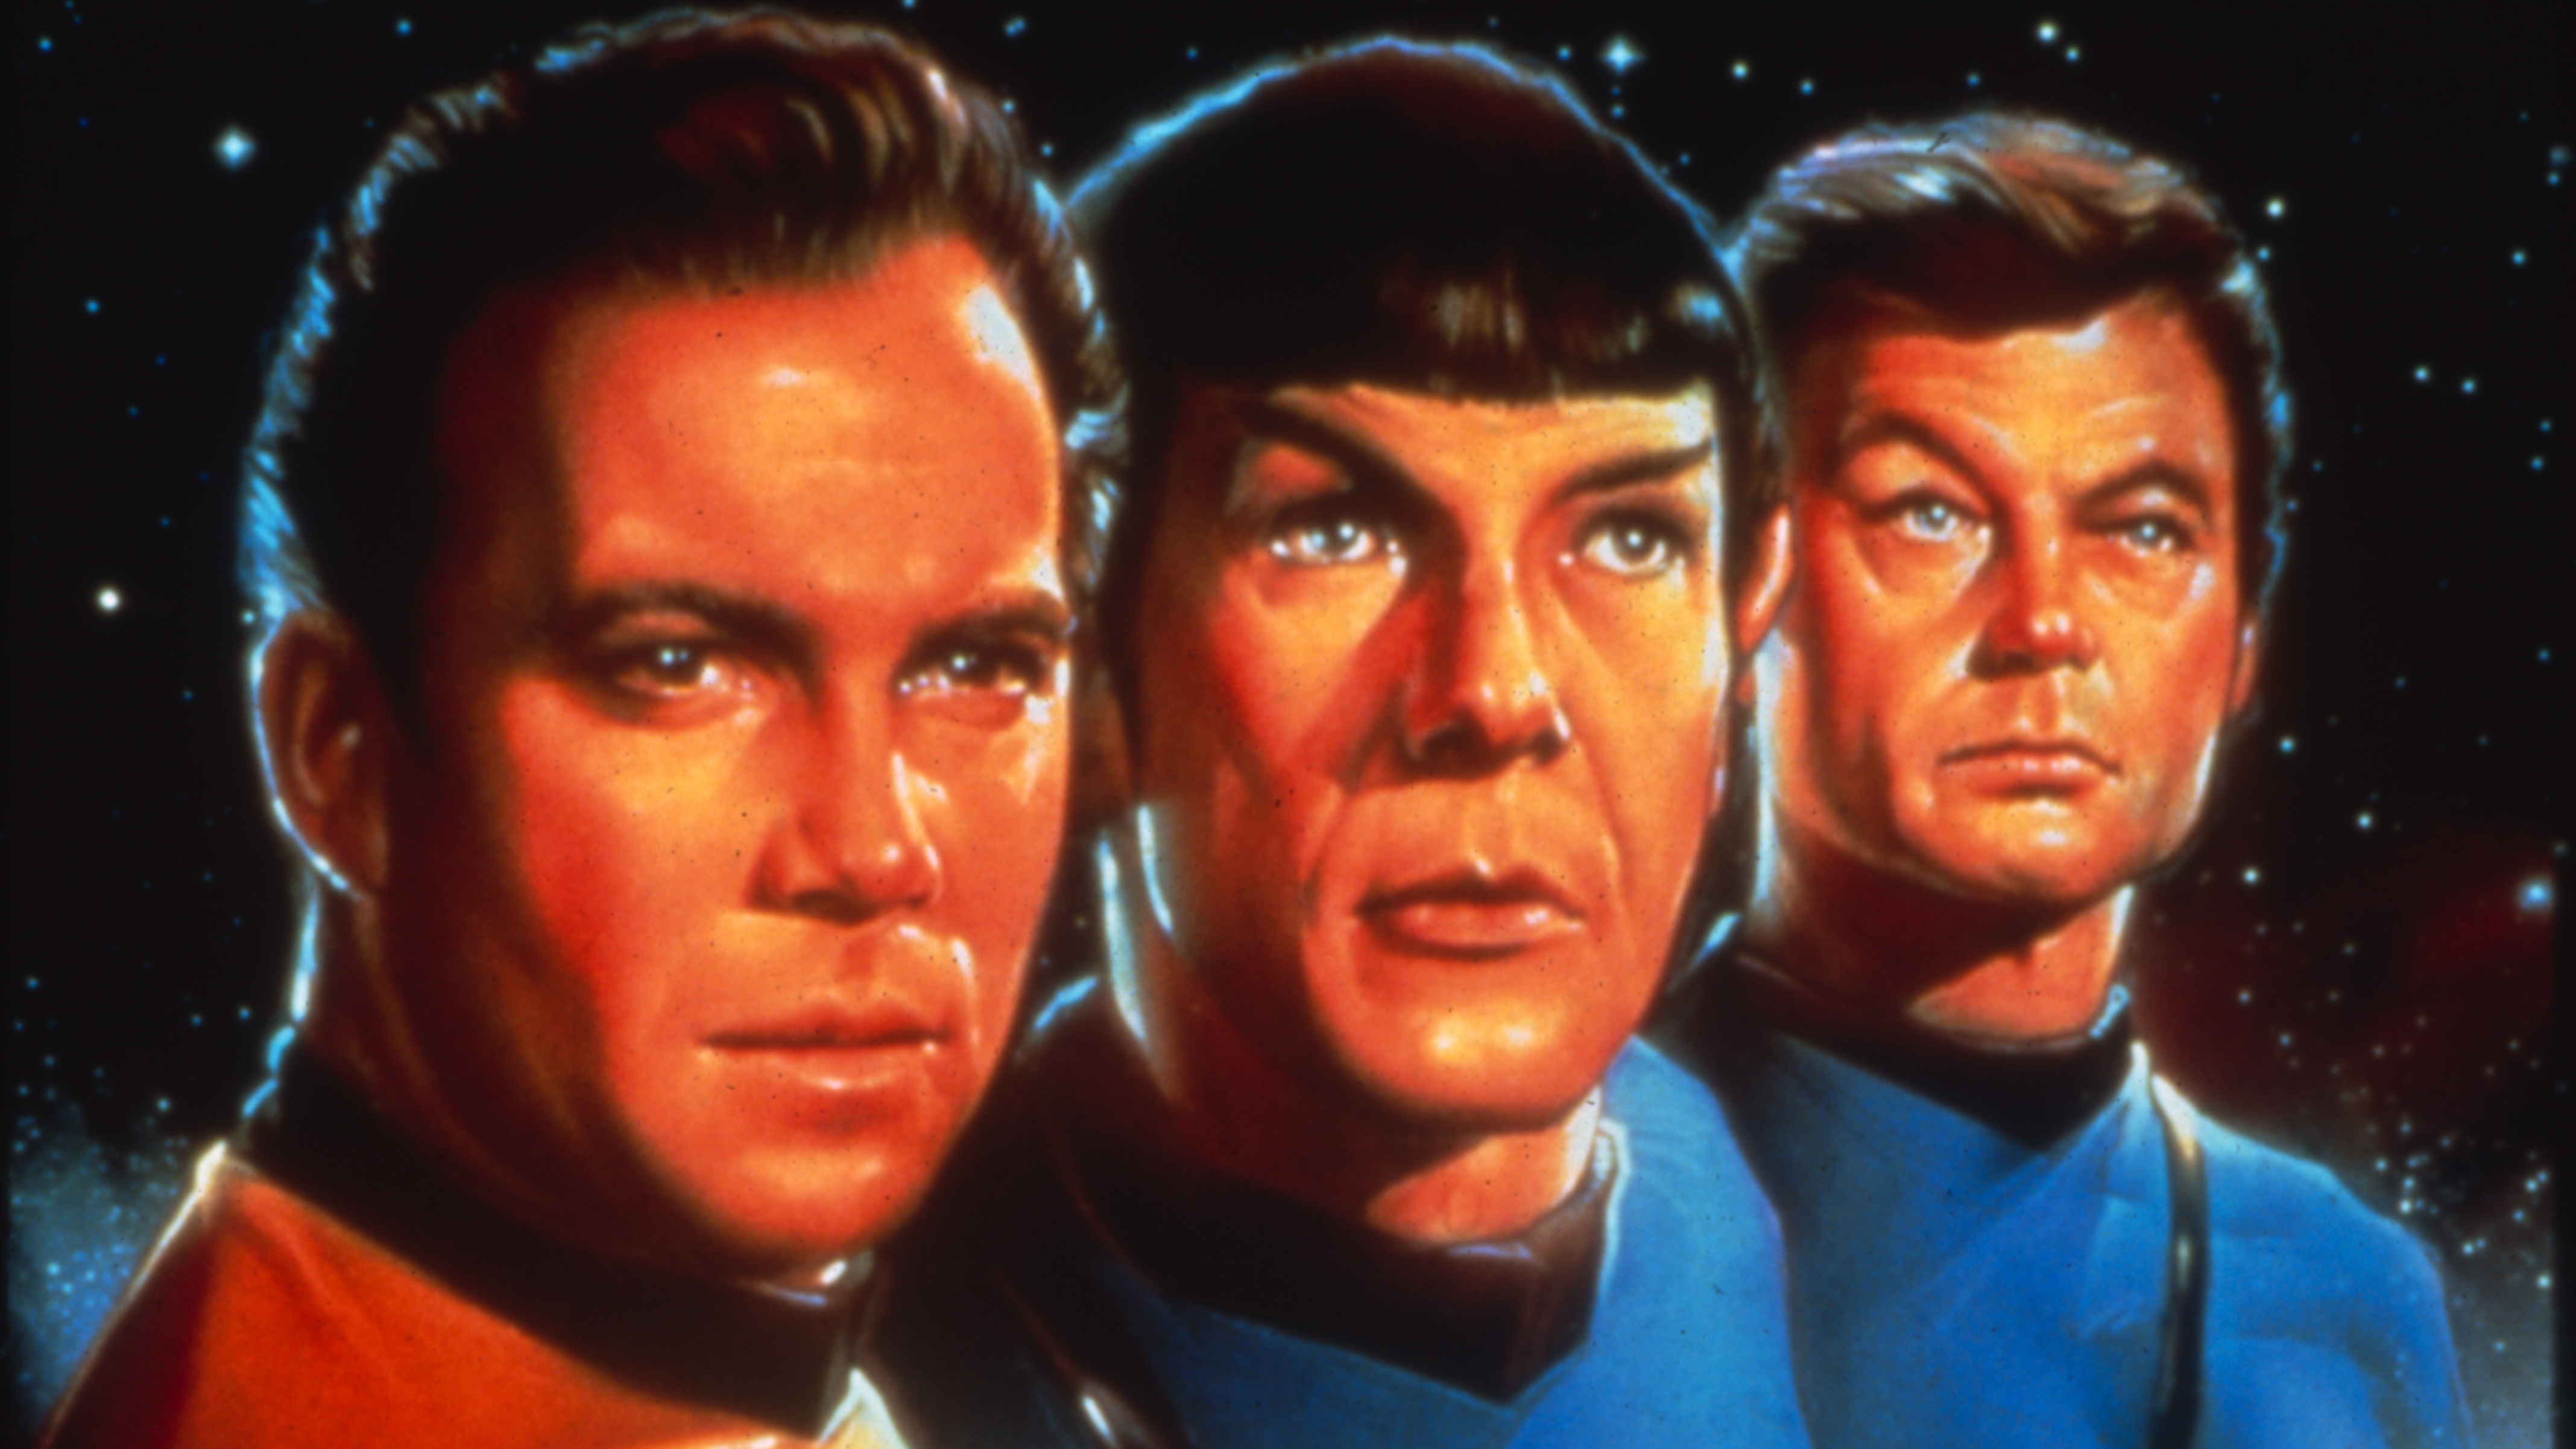 Download mobile wallpaper Star Trek: The Original Series, Star Trek, Tv Show for free.